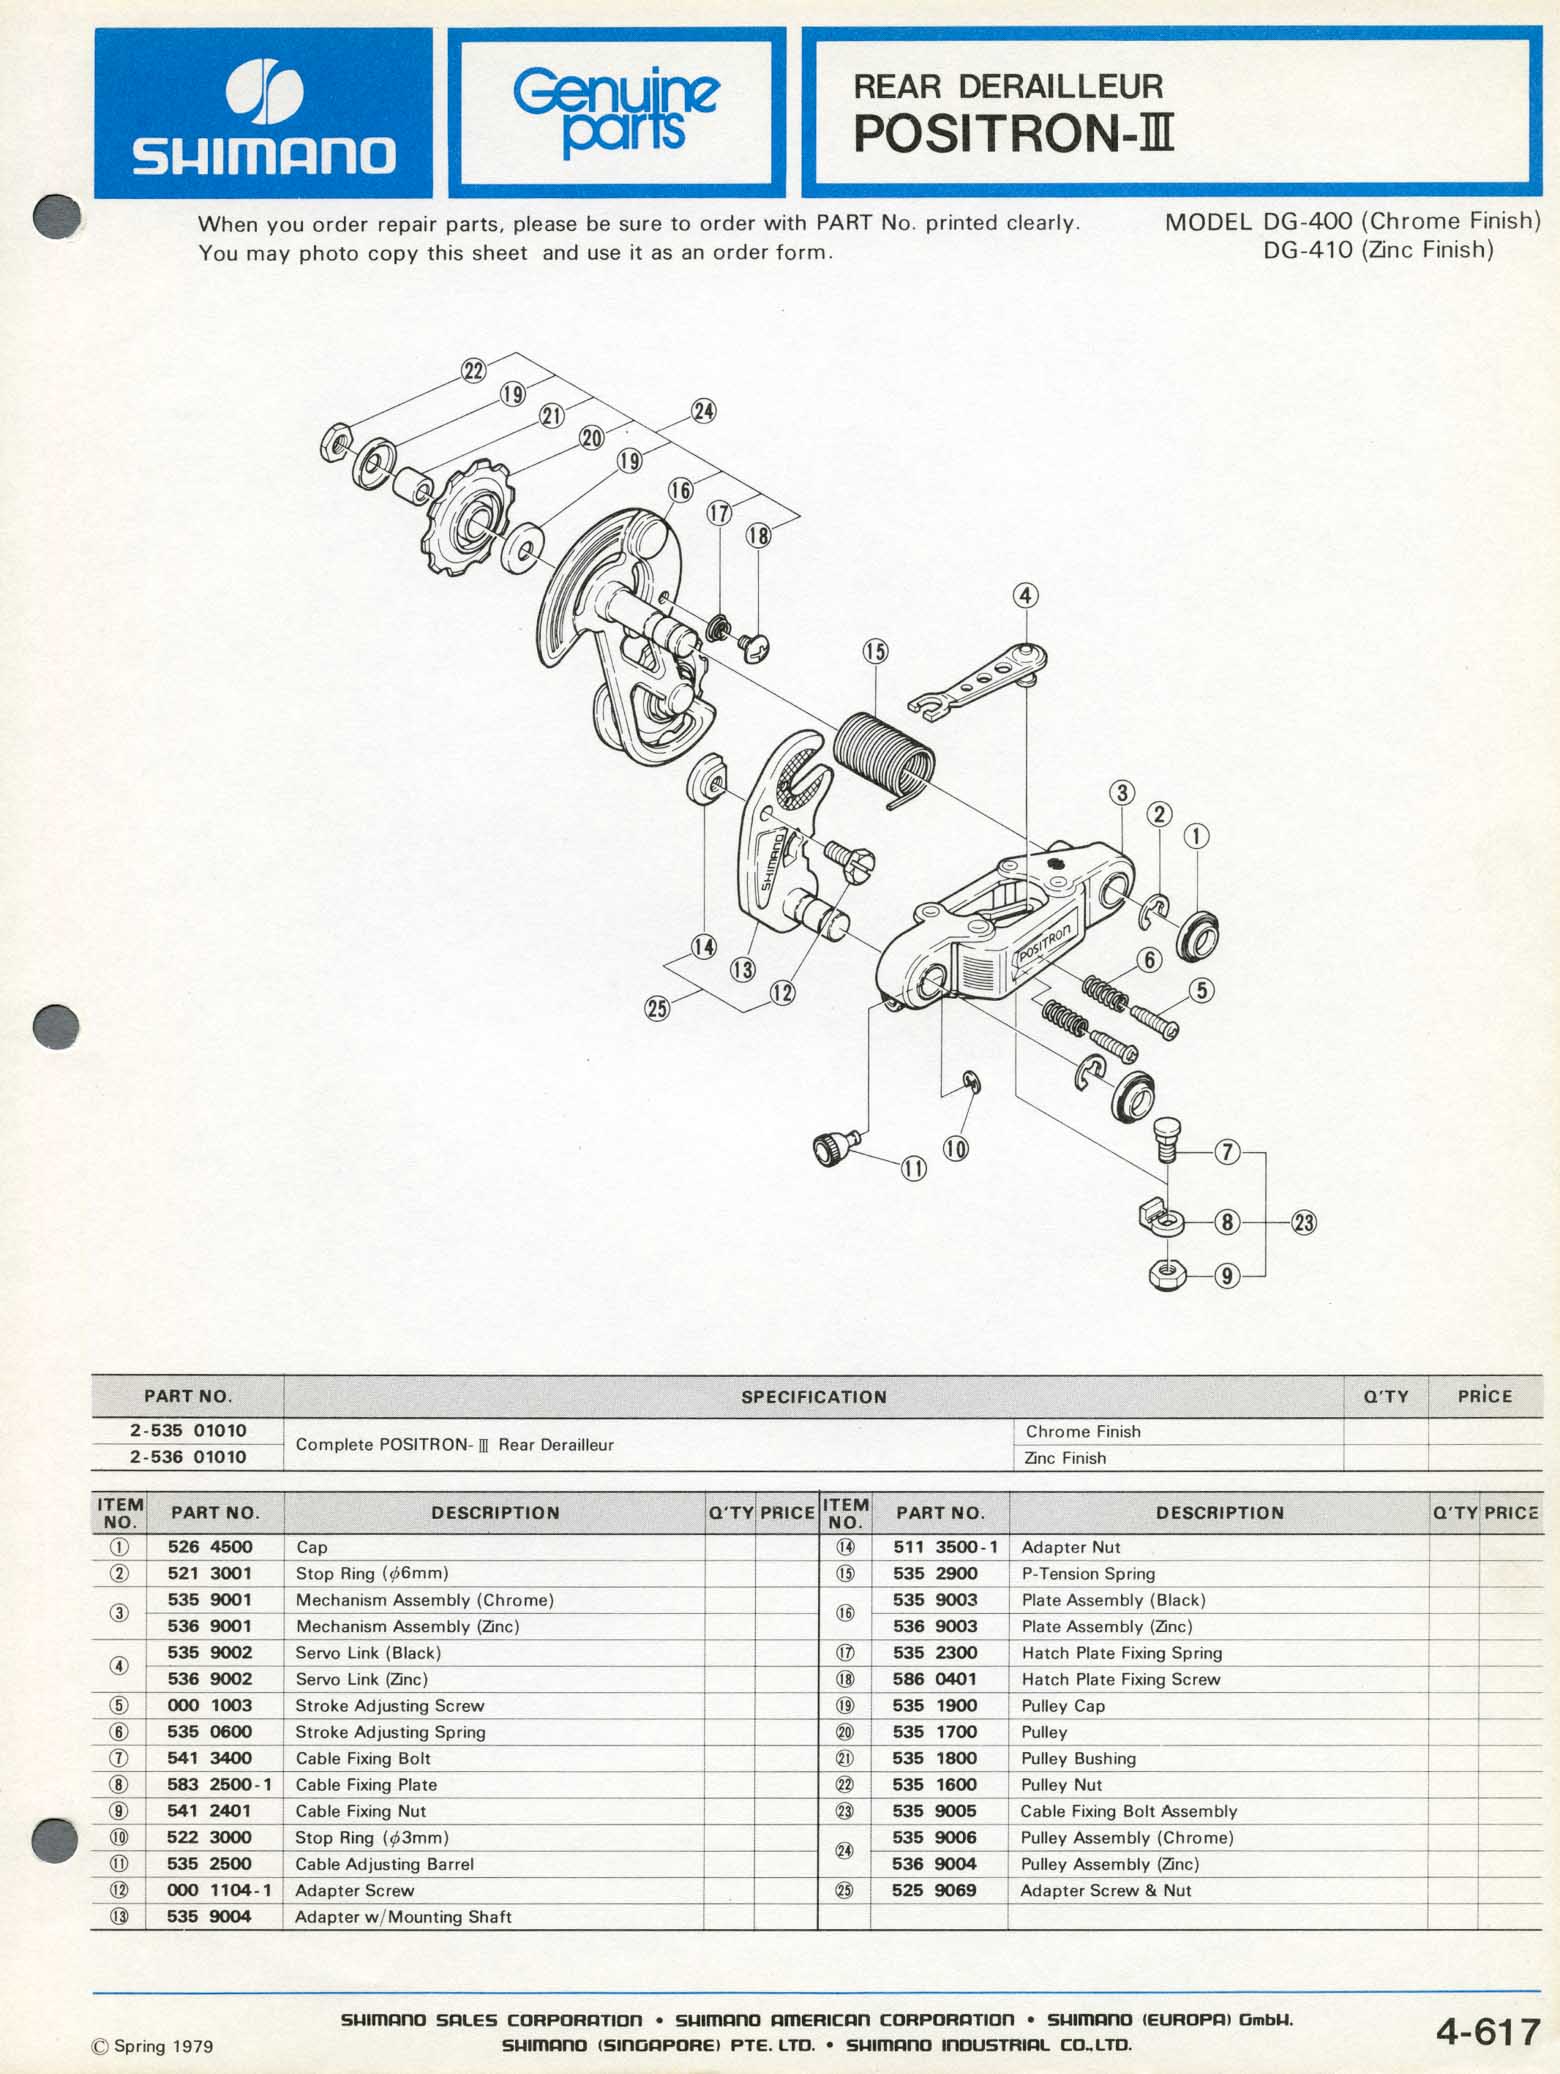 Shimano Bicycle Parts - 1979 scan 05 main image